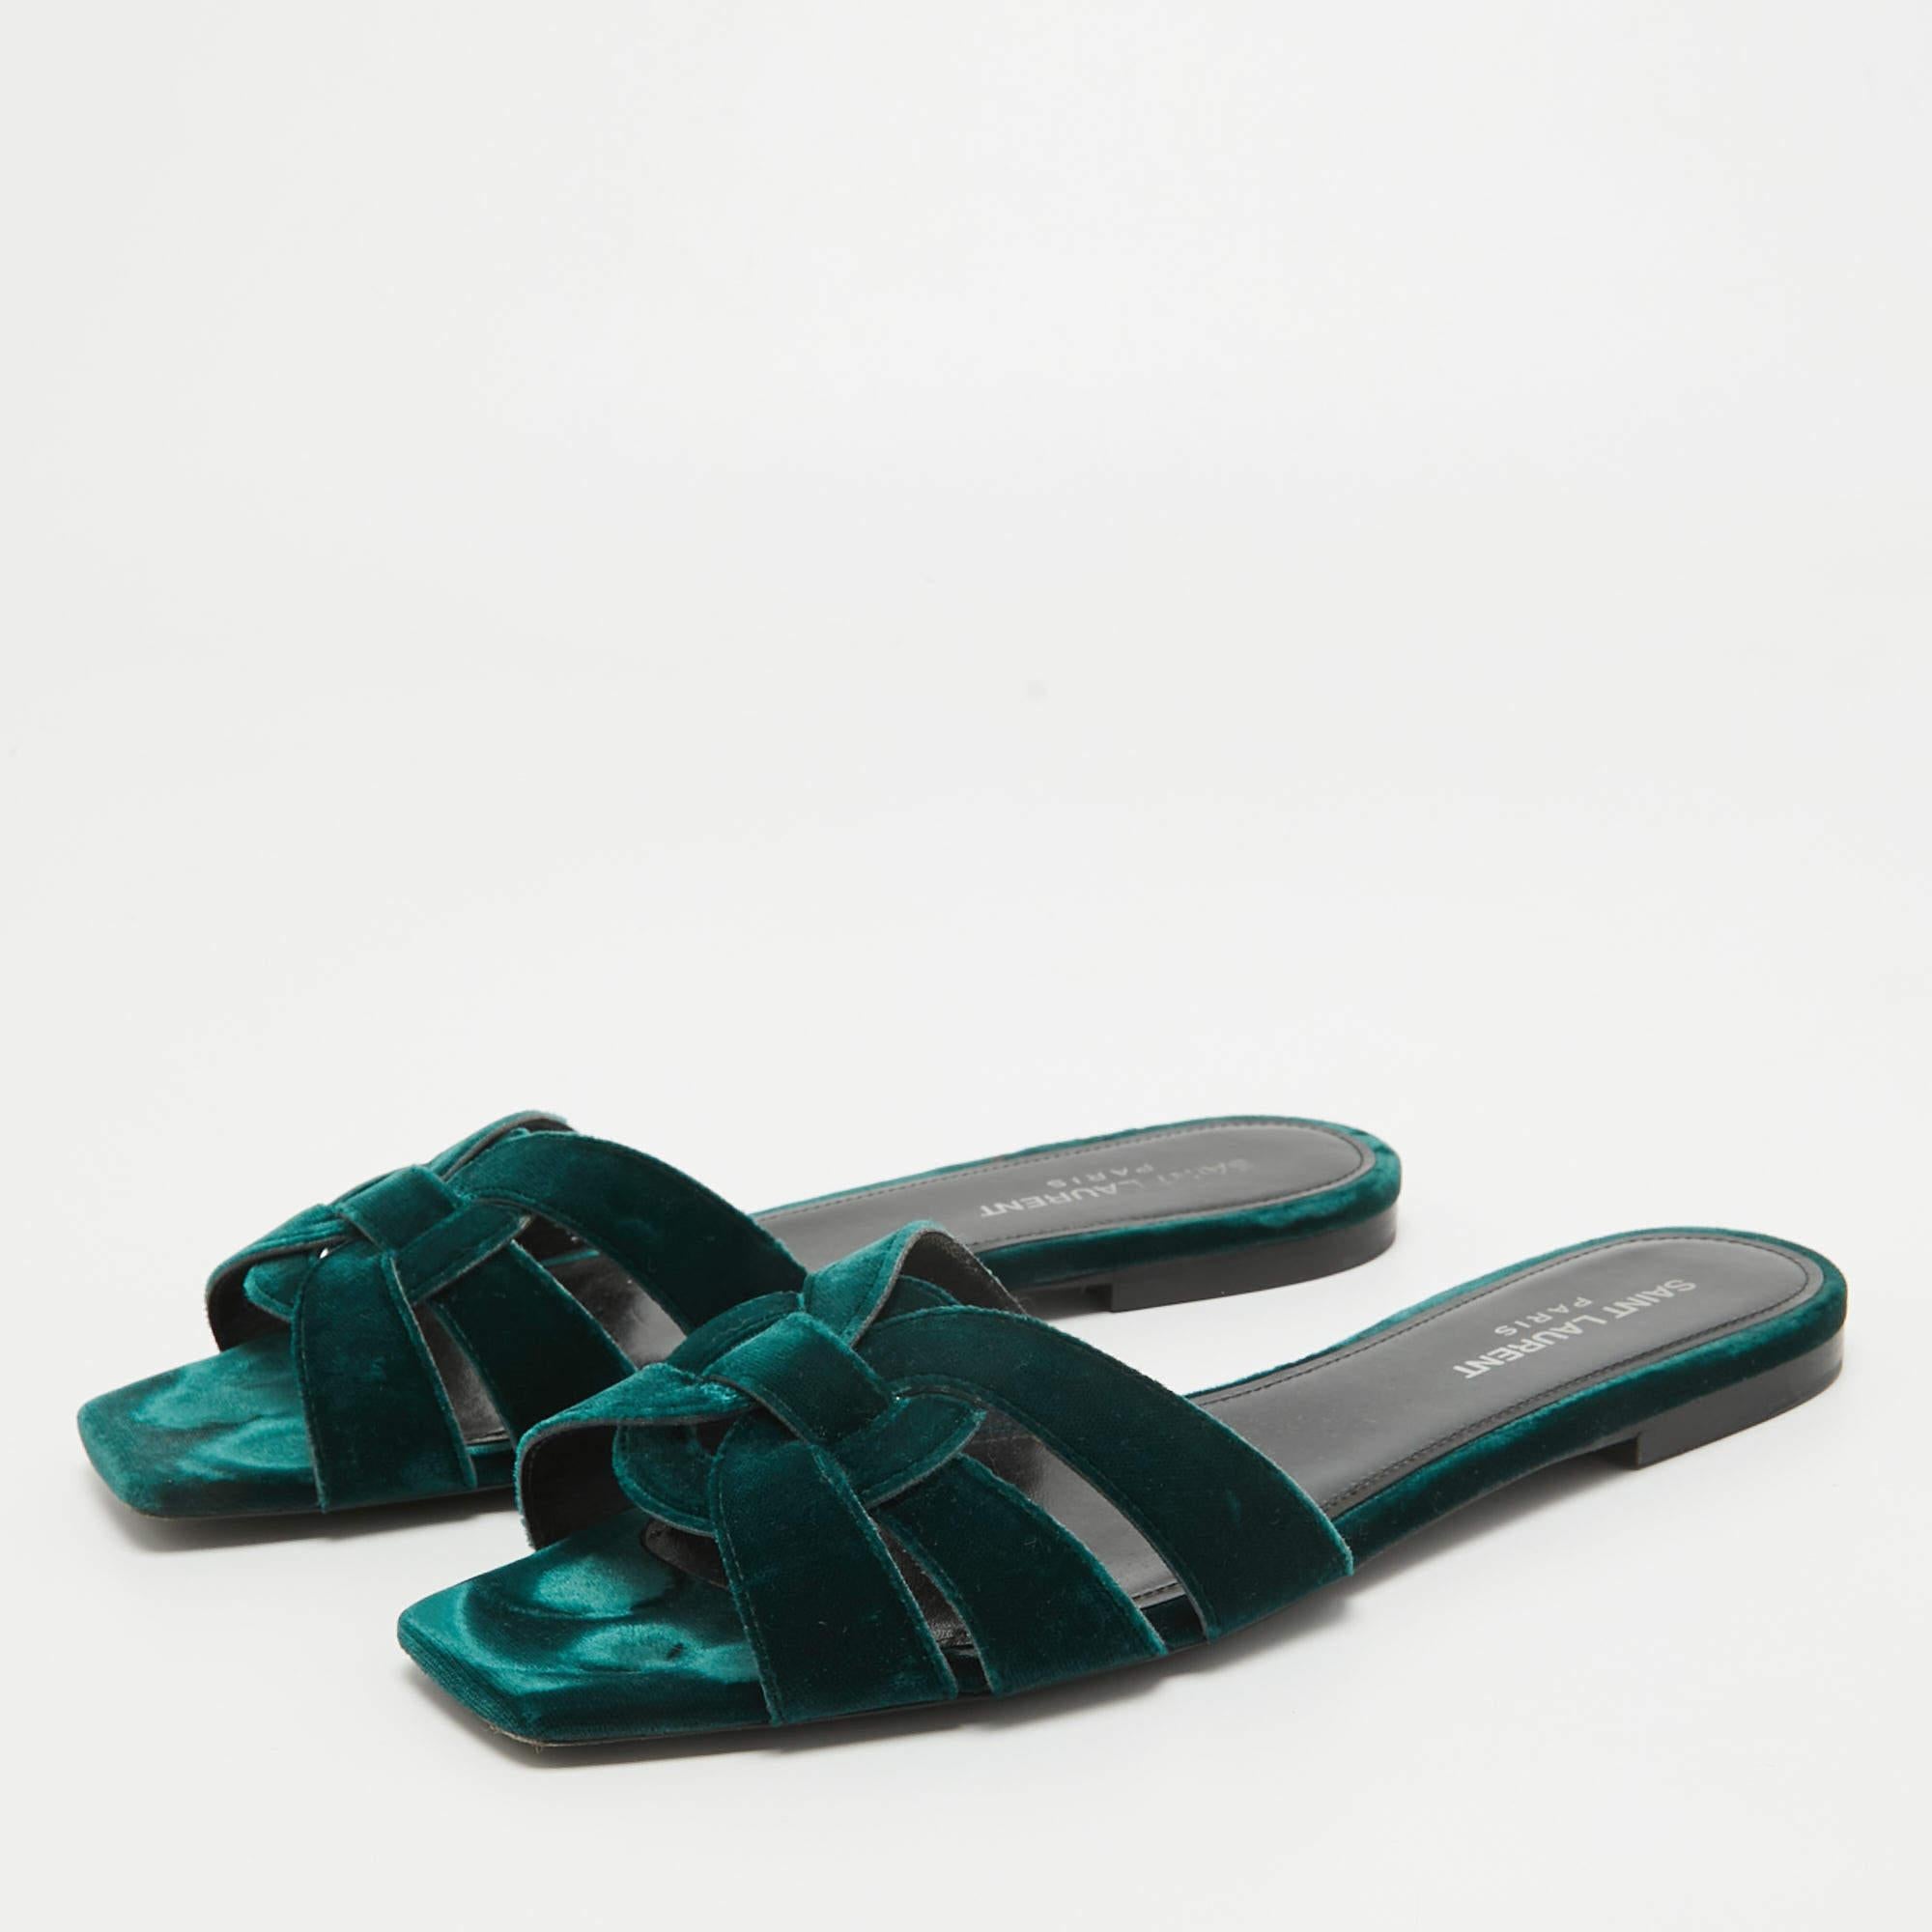 Umrahmen Sie Ihre Füße mit diesen flachen Sandalen von YSL. Die aus den besten MATERIALEN gefertigten Flats passen perfekt zu kurzen, Midi- und Maxi-Säumen.

